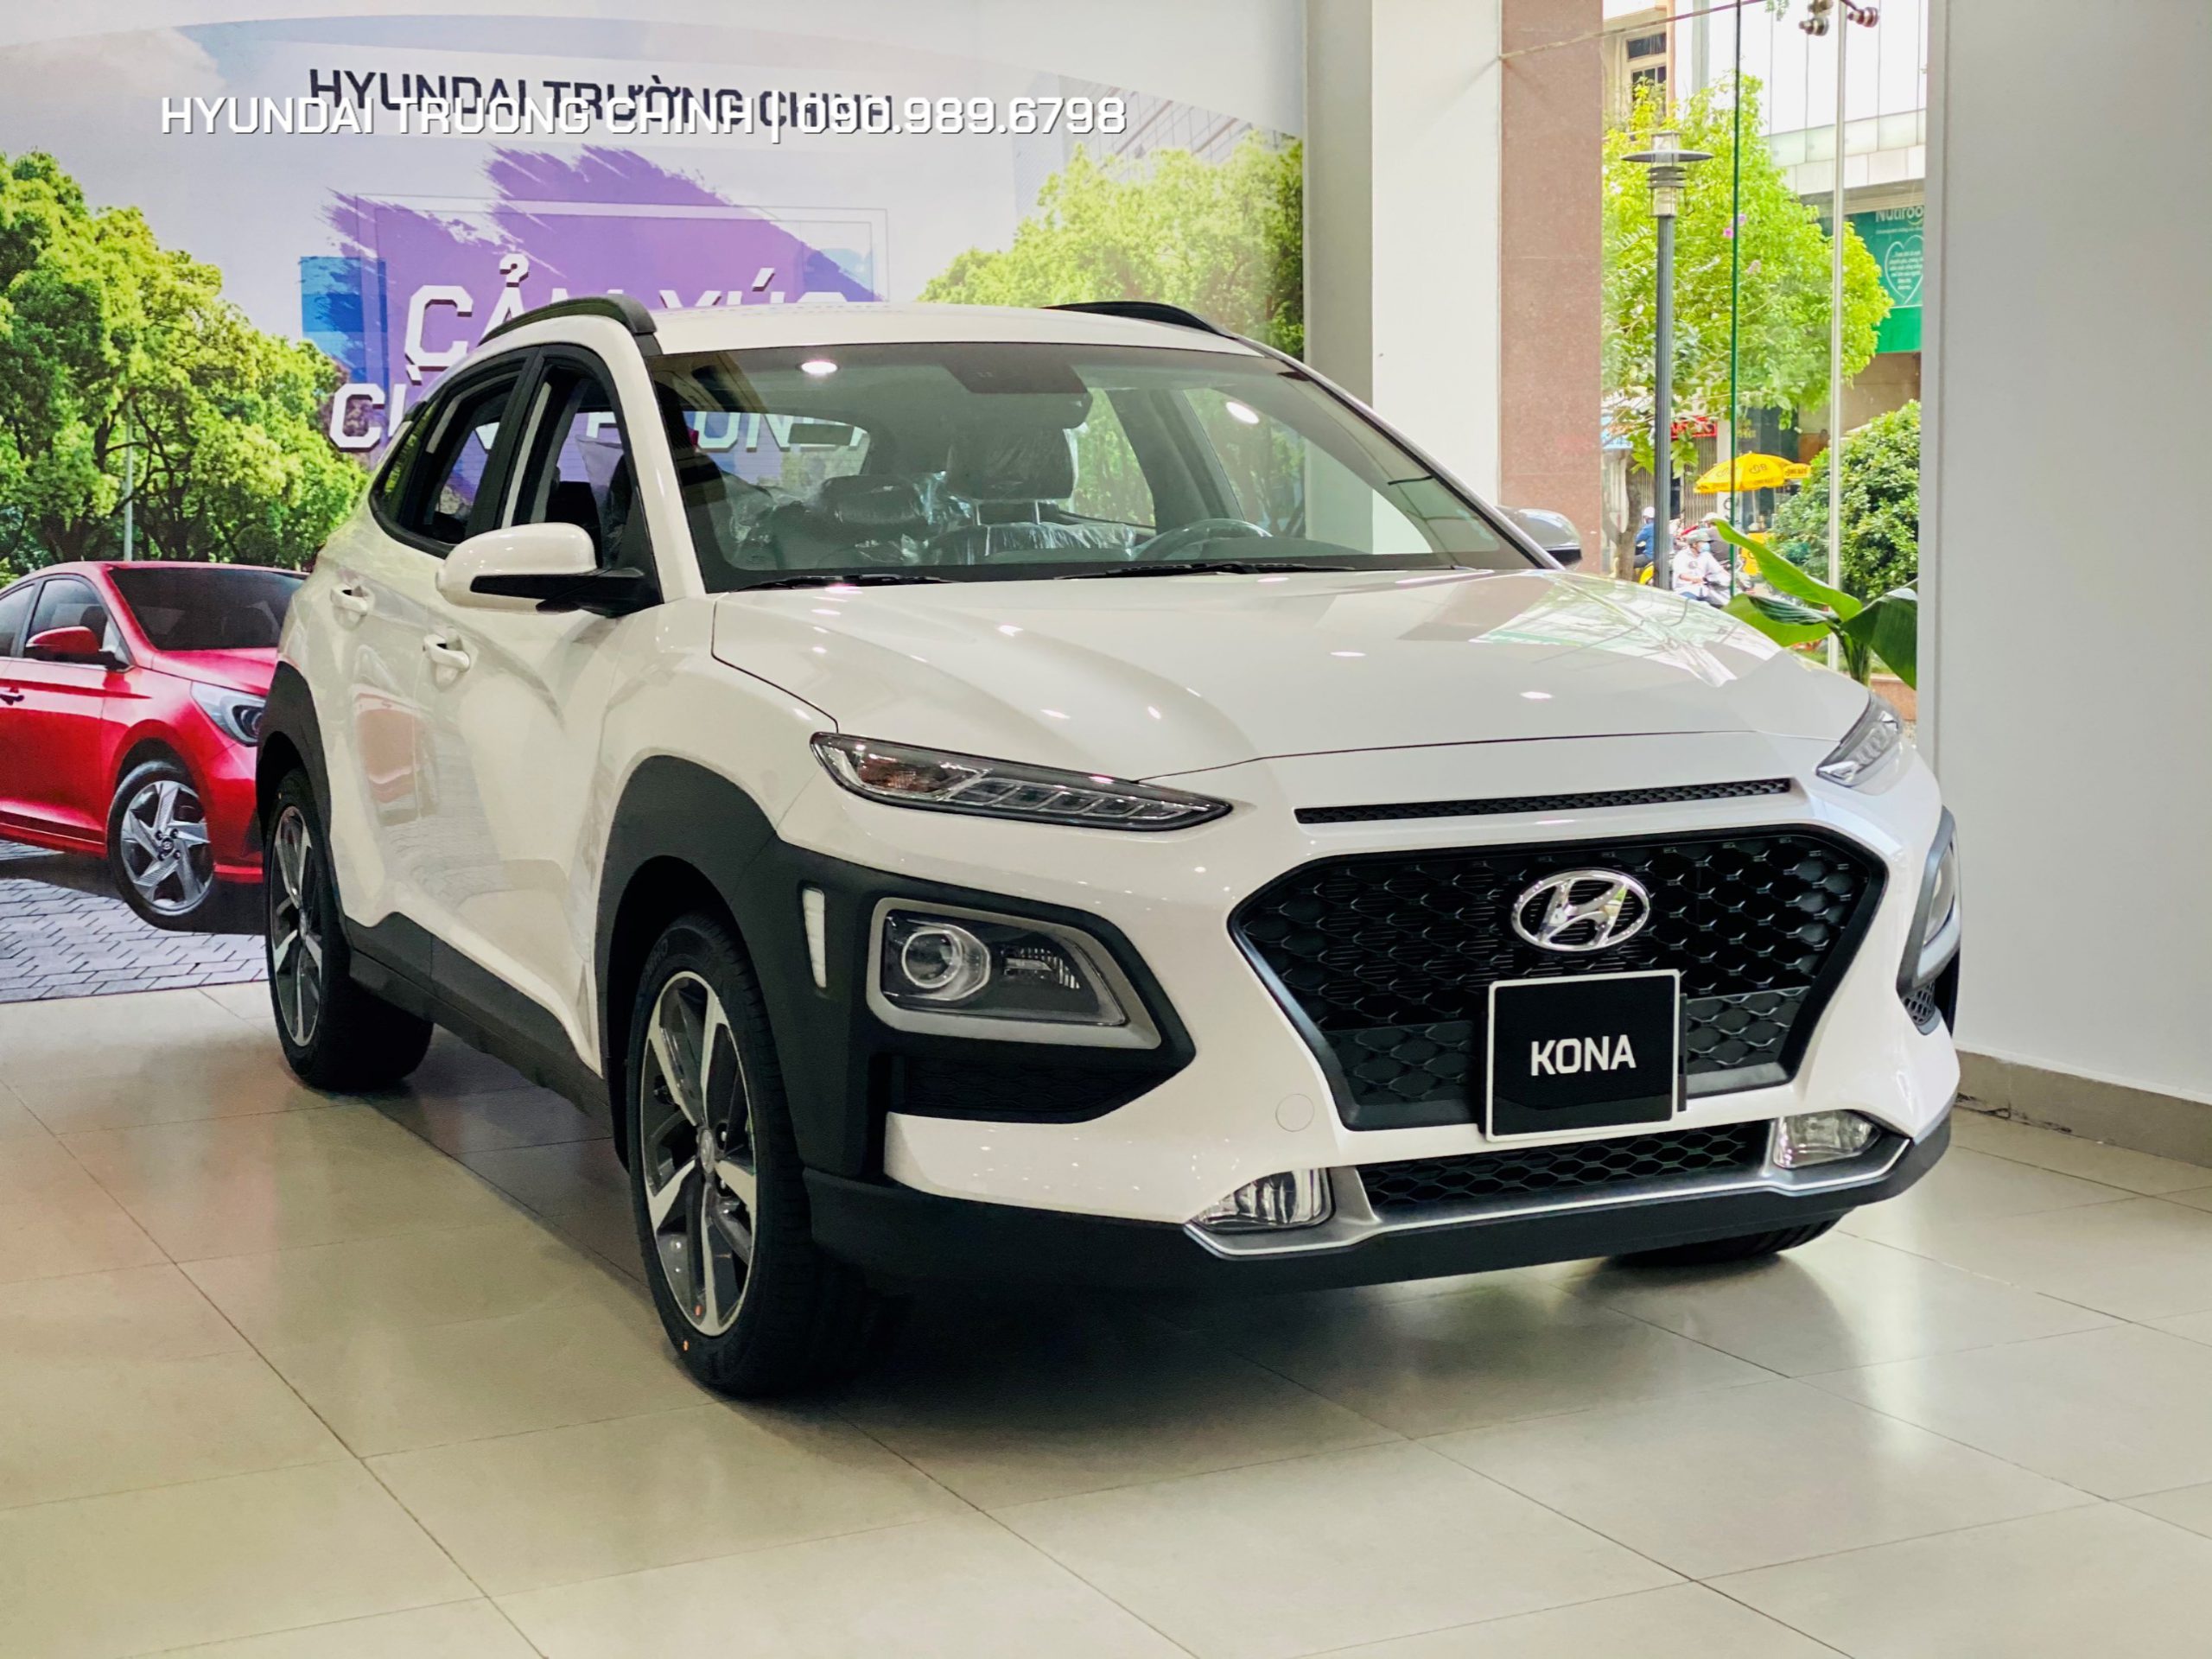 Hình ảnh Hyundai Kona tiêu chuẩn màu trắng  Hyundai Sài Gòn